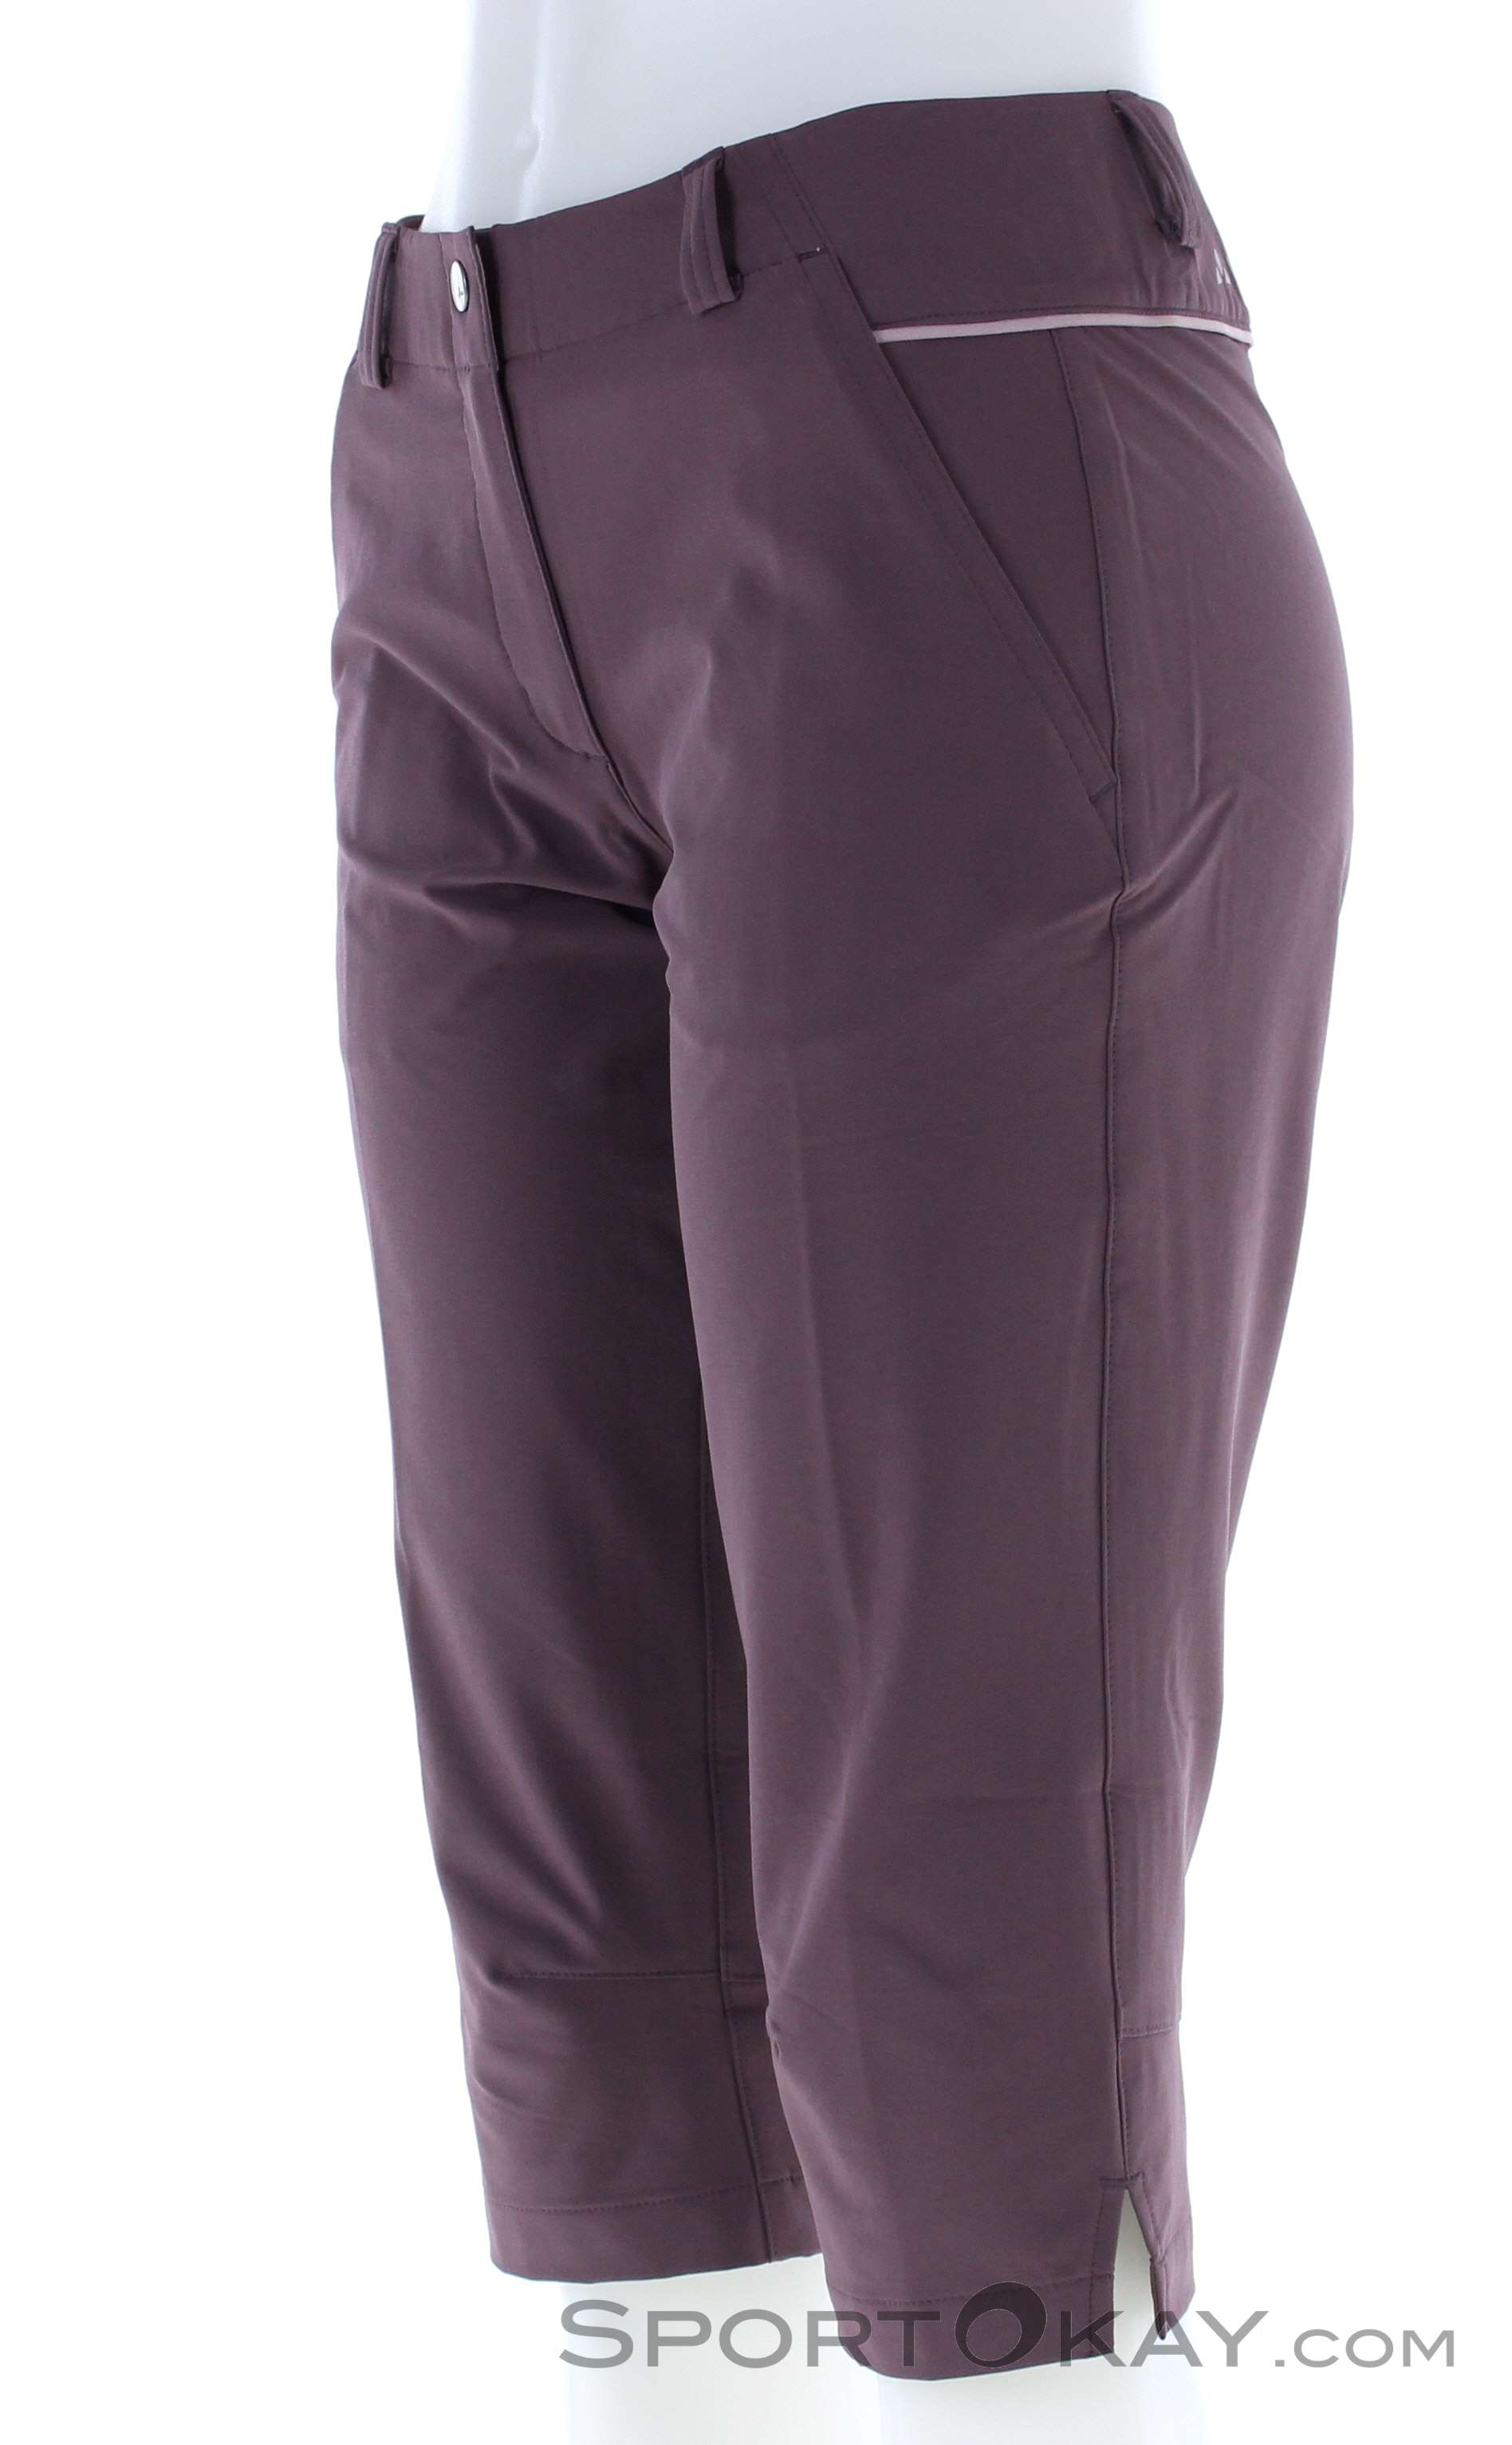 Vaude Skomer Capri Women Outdoor Pants - Pants - Outdoor Clothing - Outdoor  - All